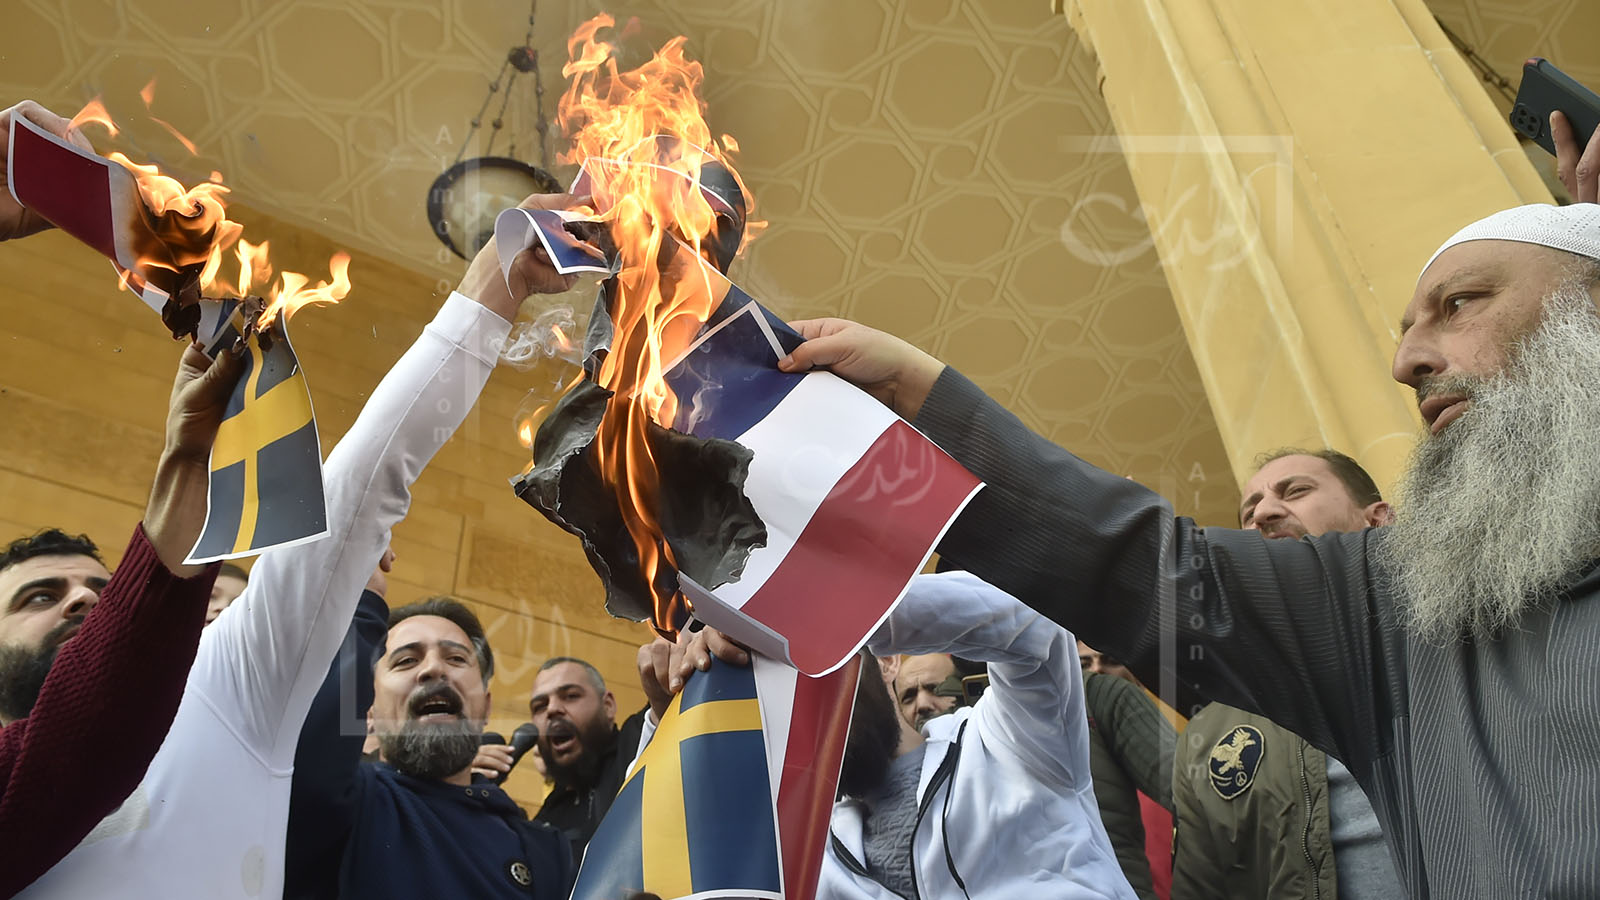 فشل "الجماعة الإسلامية" في تظاهرتها إلى السفارة السويدية